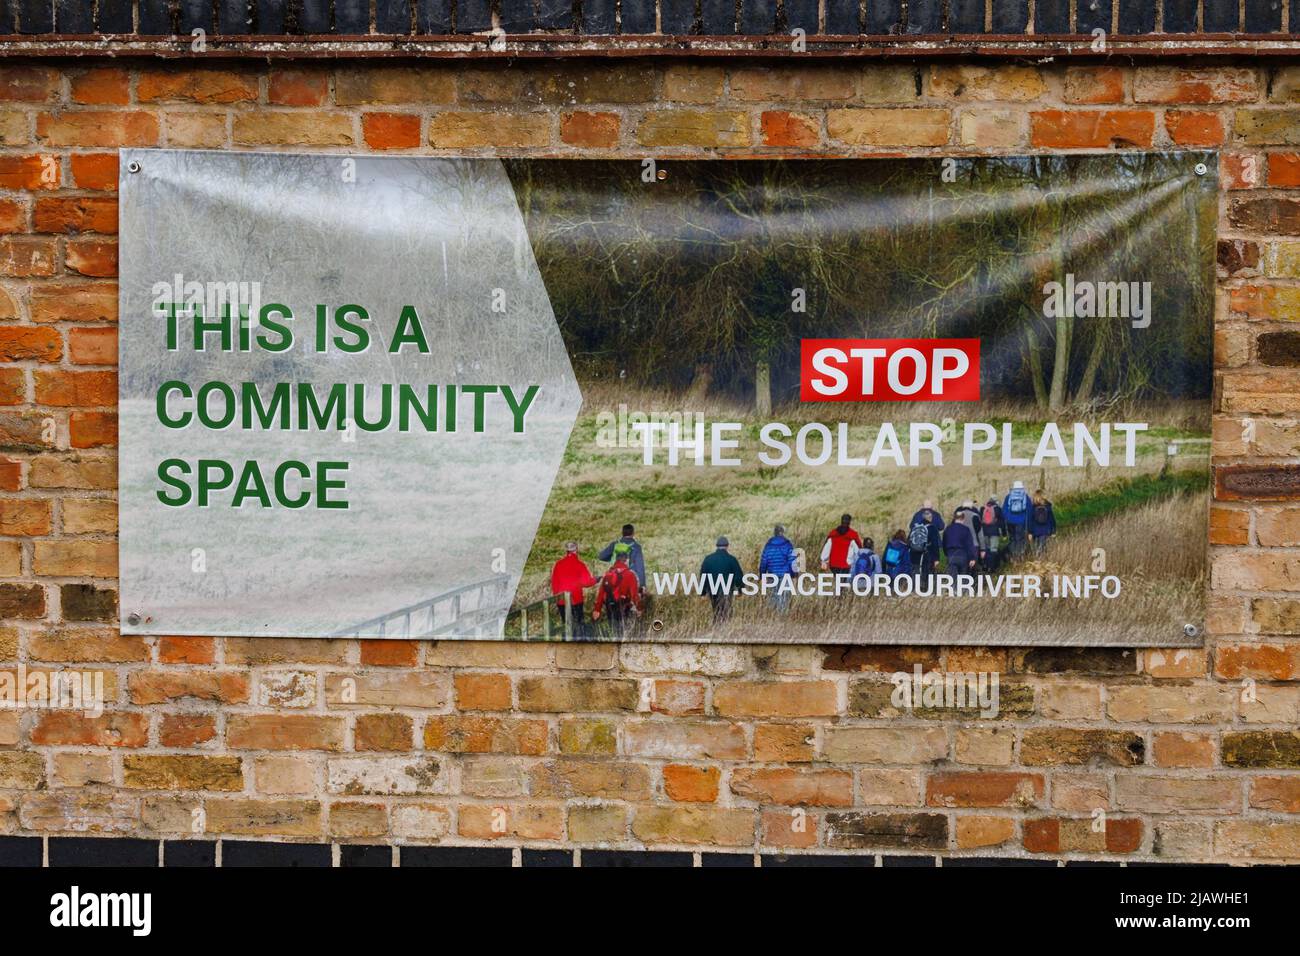 Bannière de ferme de plantes solaires sur un mur. Offord Cluny, Cambridgeshire, Angleterre Banque D'Images